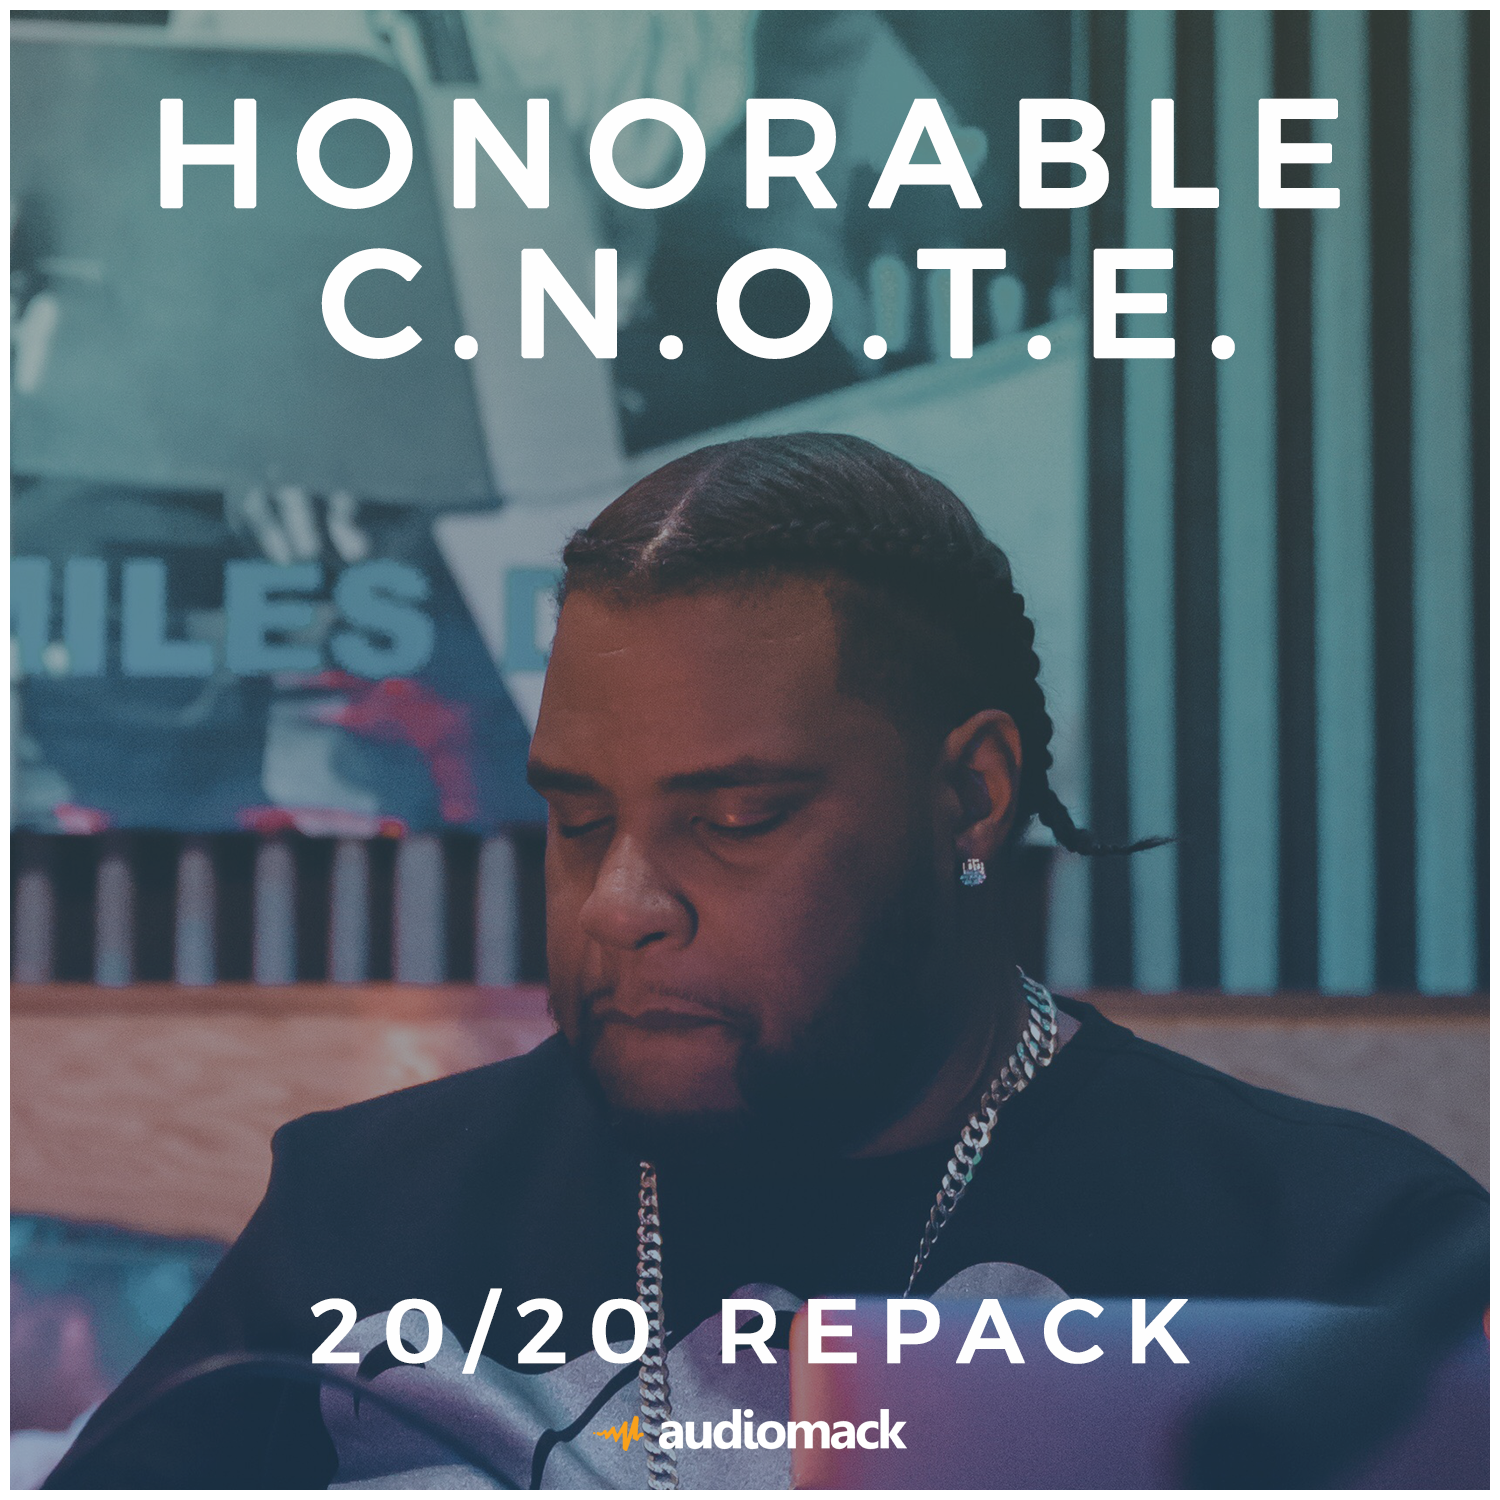 Honorable C.N.O.T.E - 20/20 Repack